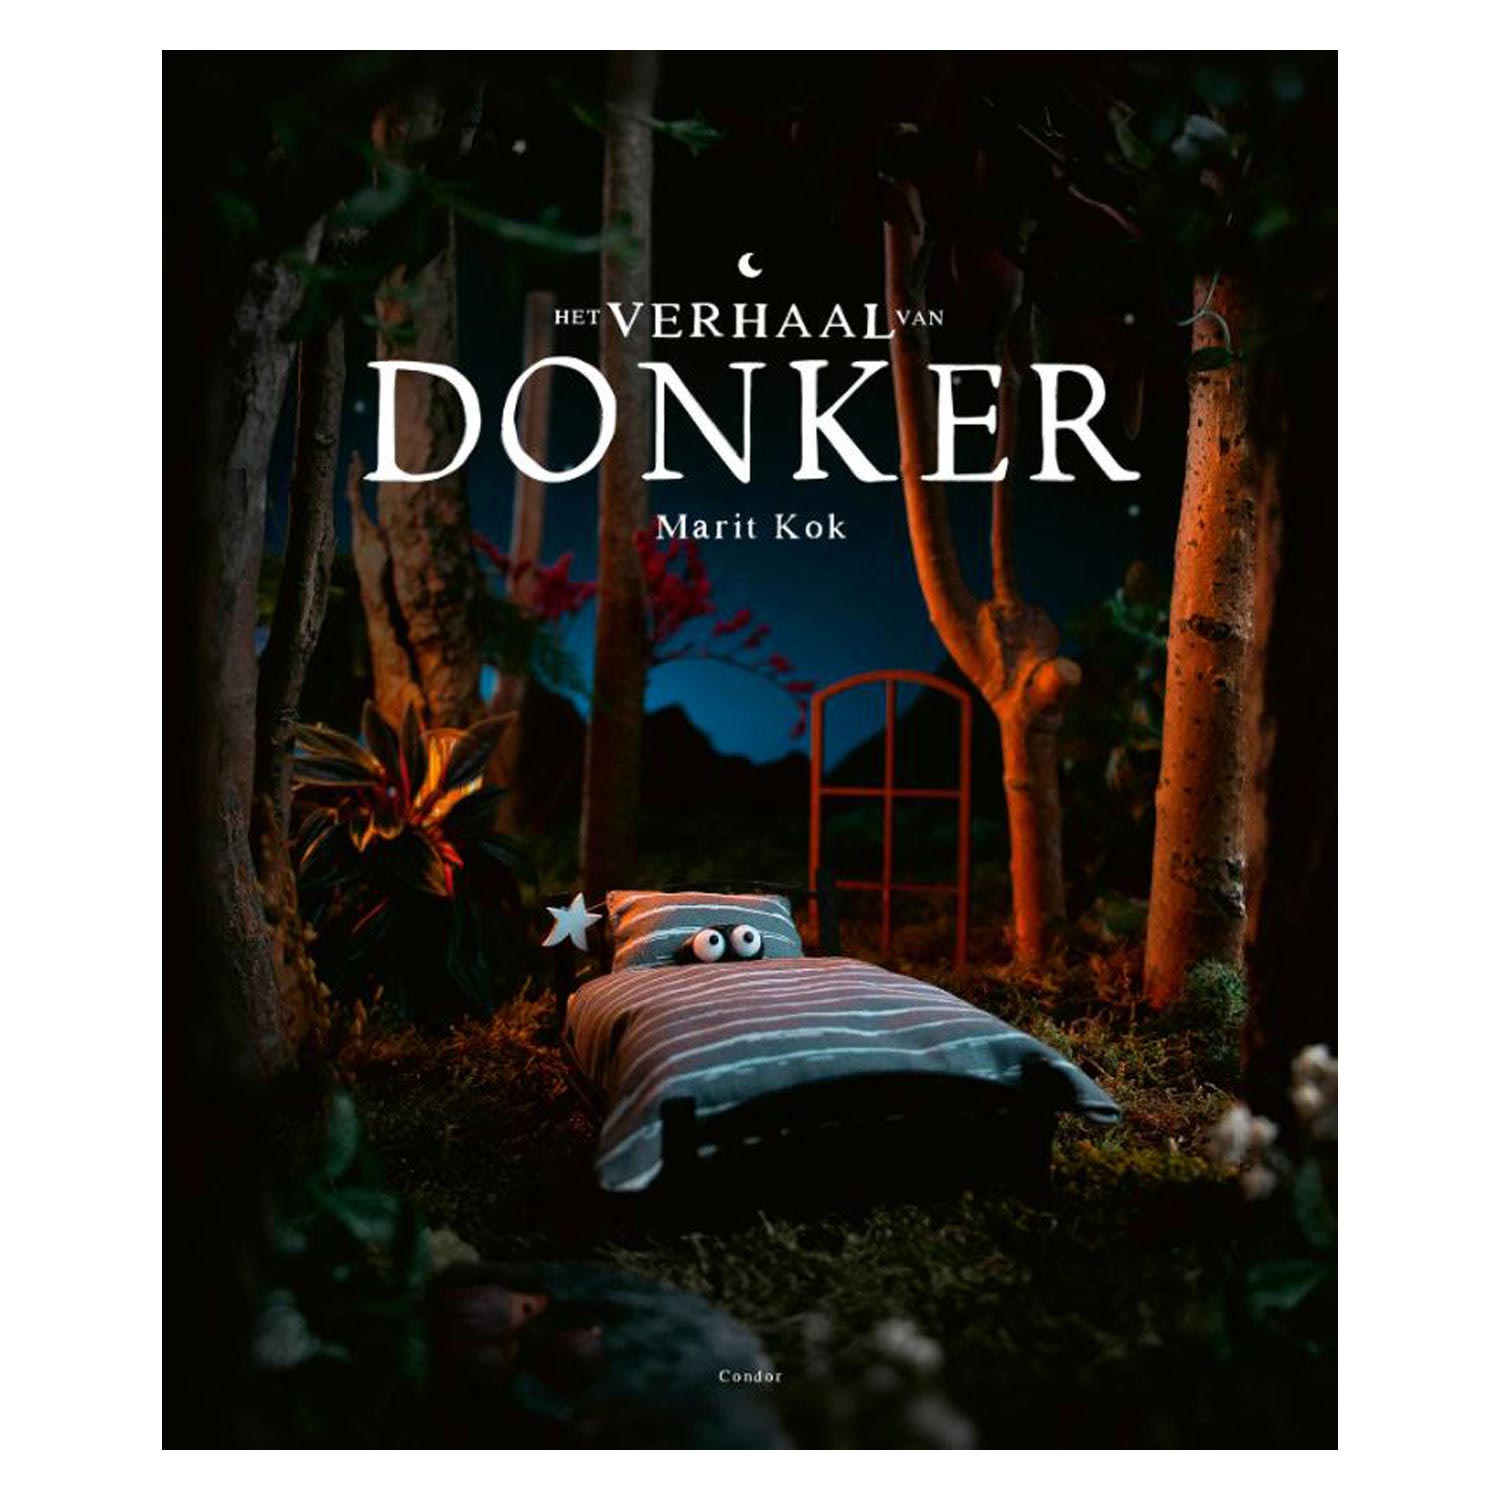 Die Geschichte von Donker